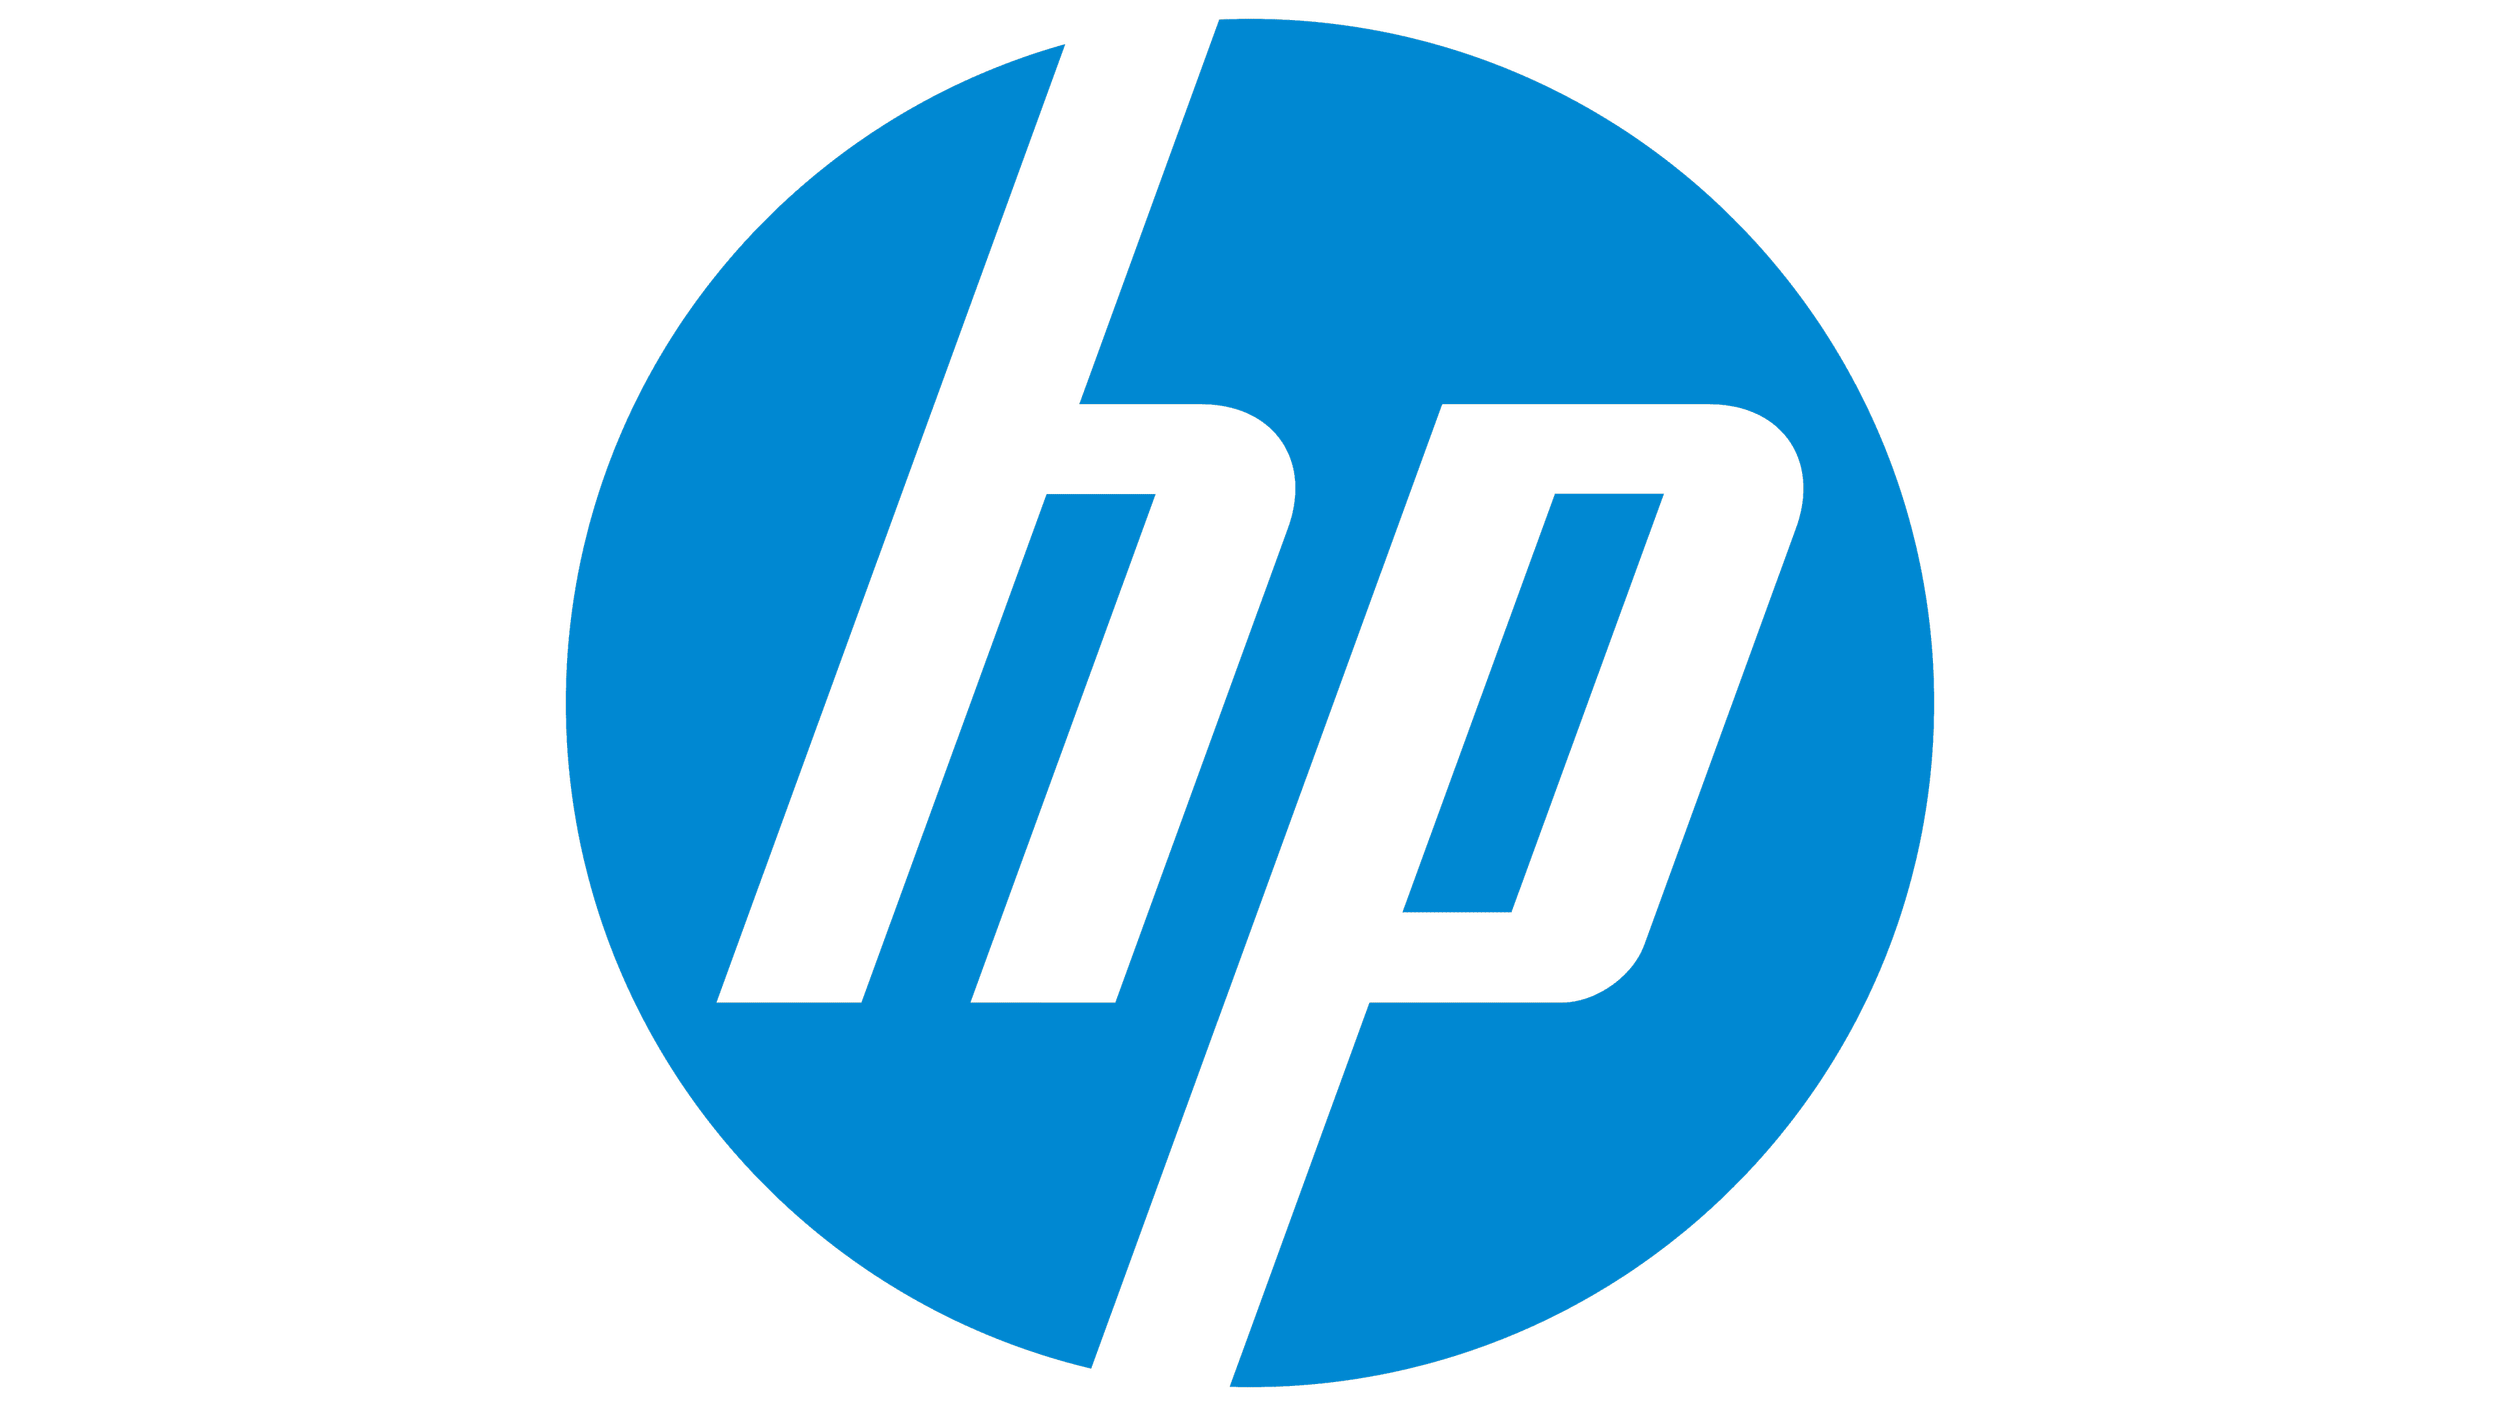 HP-Logo.png